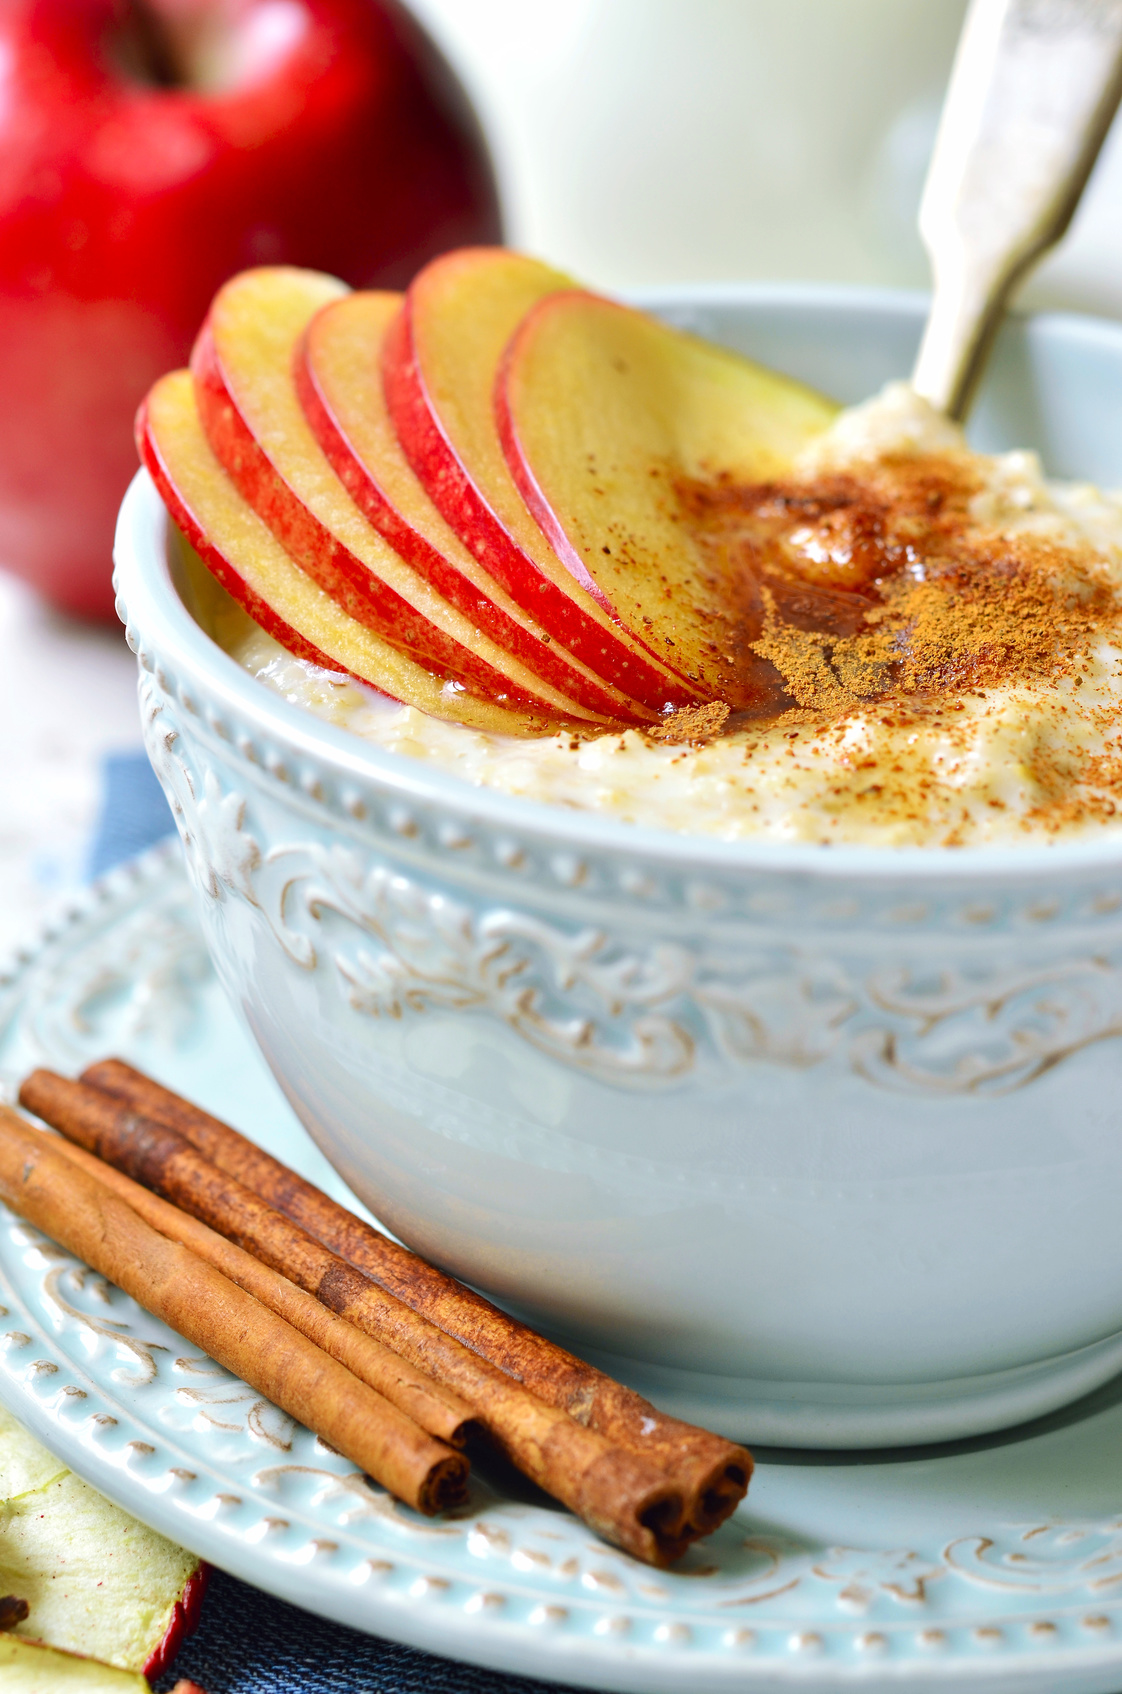 goodblog mit der TCM-Ernährungsberatung Apfelbaum: Warmes Frühstück - Haferflocken-Energiefrühstück (c) lilechka75/fotolia